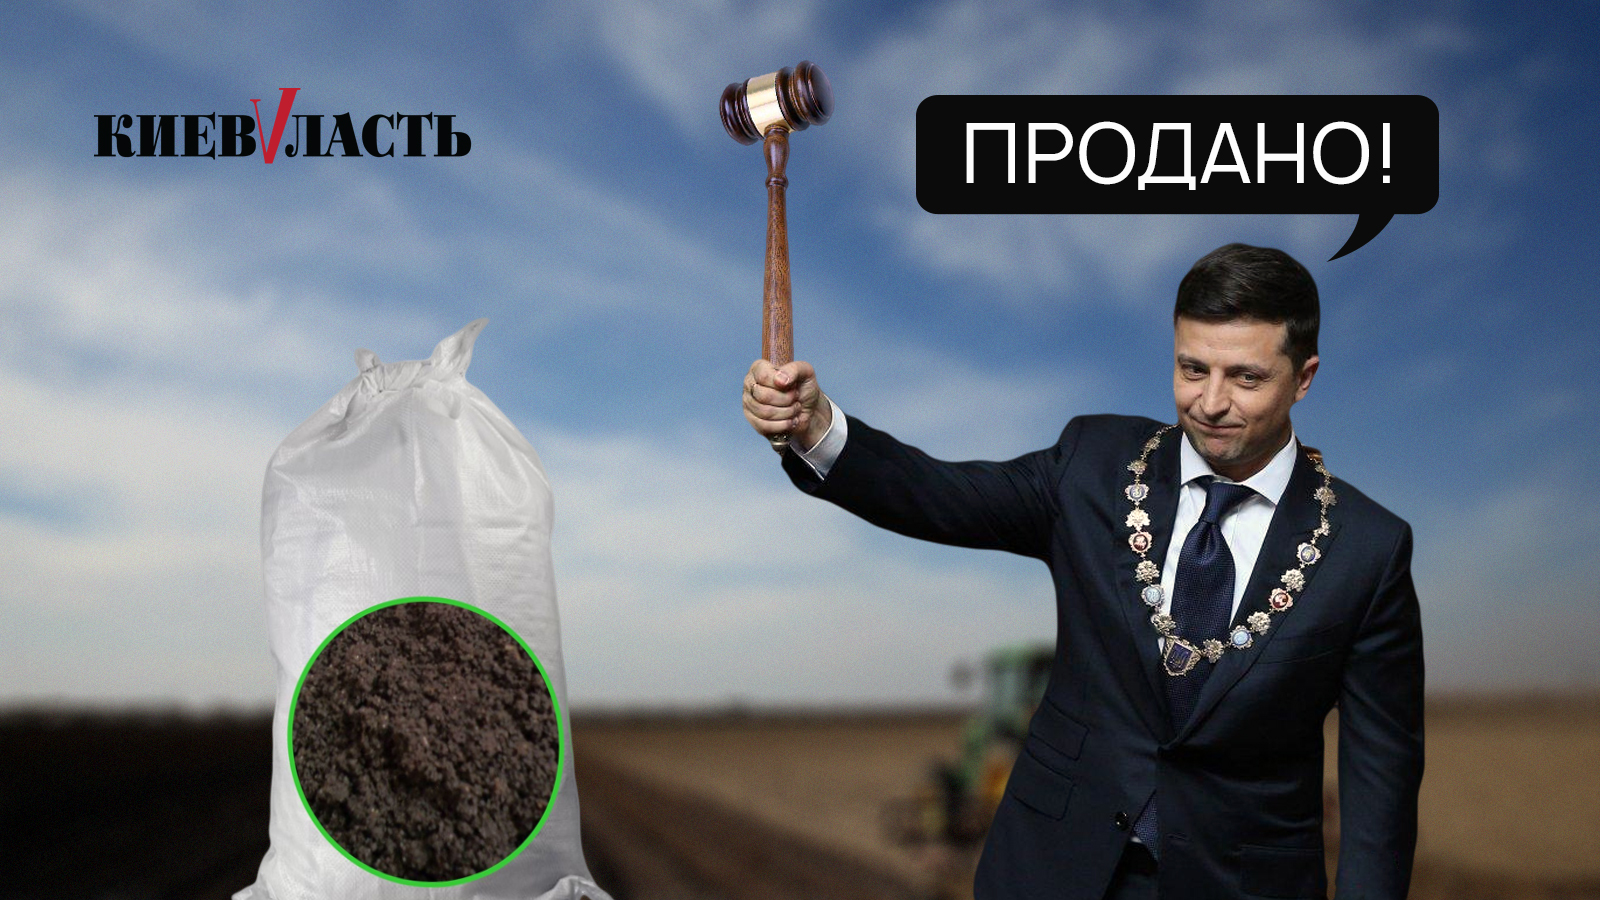 Украинцы по-прежнему против продажи земли - результаты соцопроса